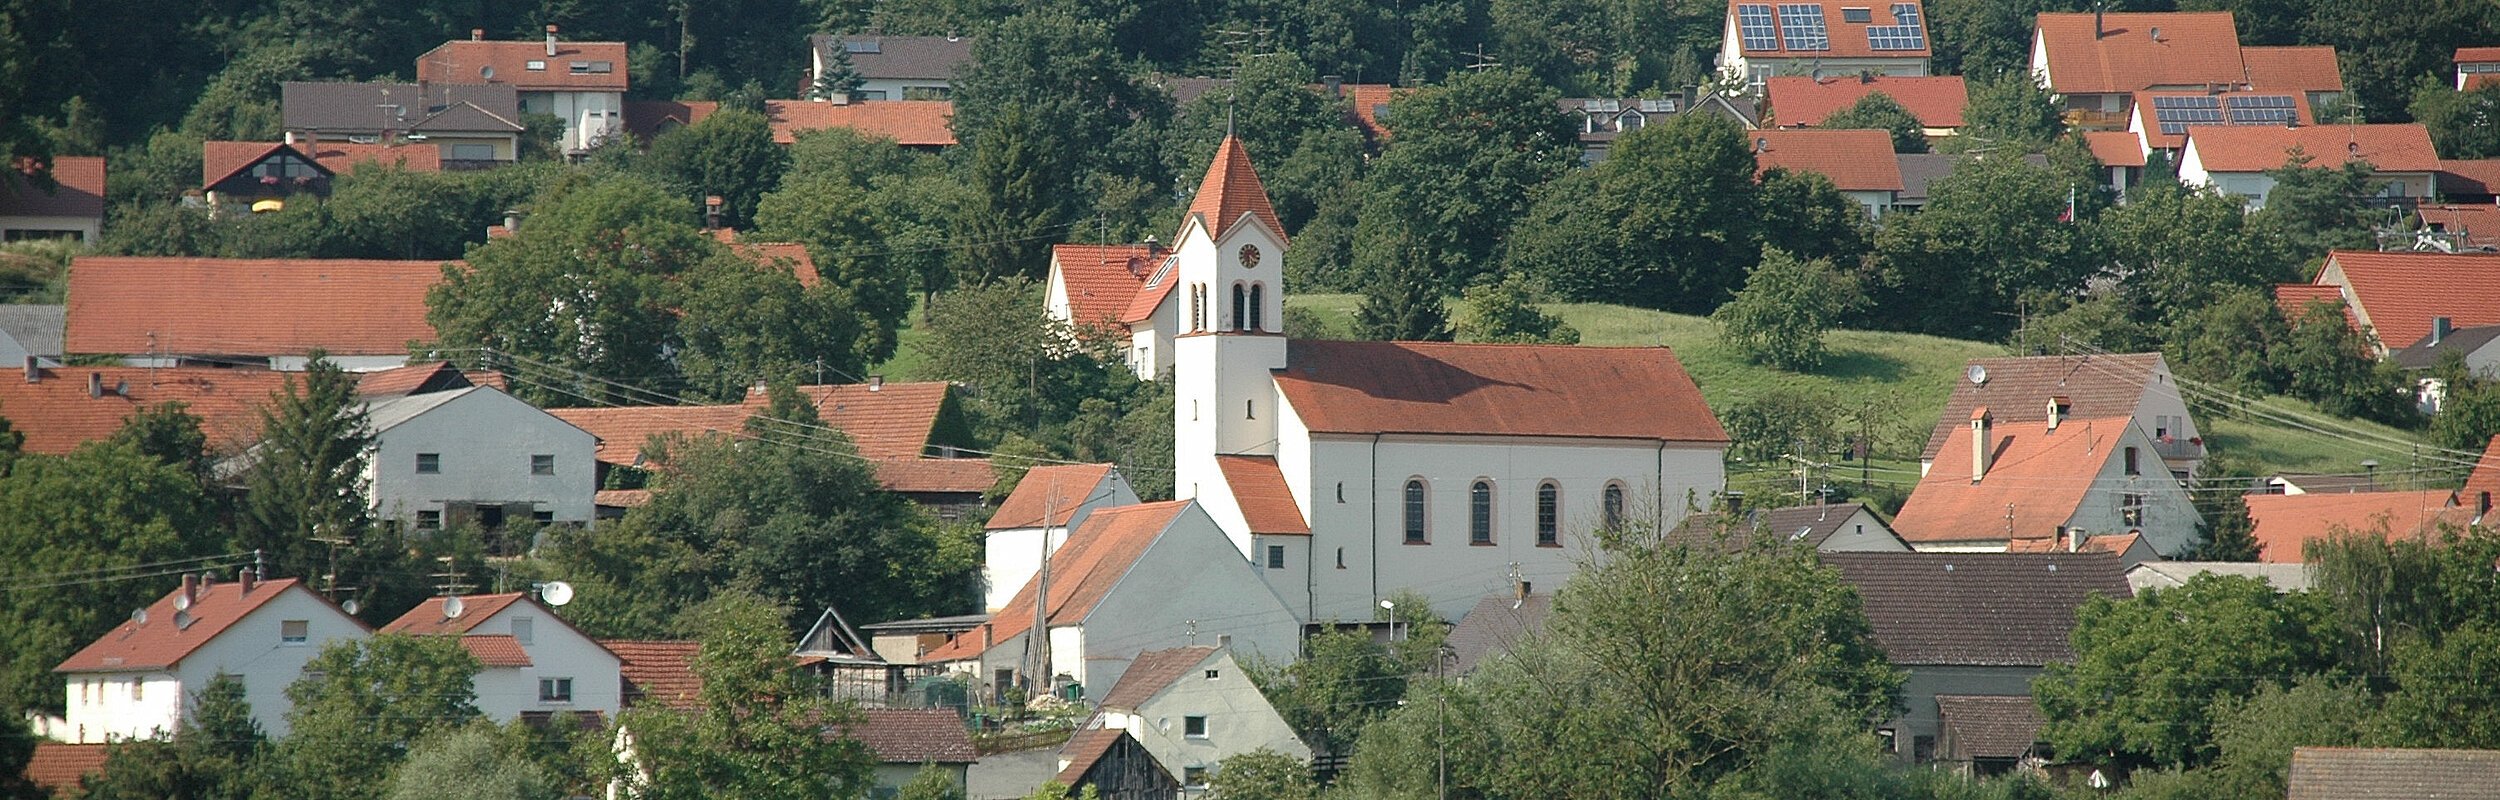 Ortsansicht Altisheim mit der Pfarrkirche St. Willibald